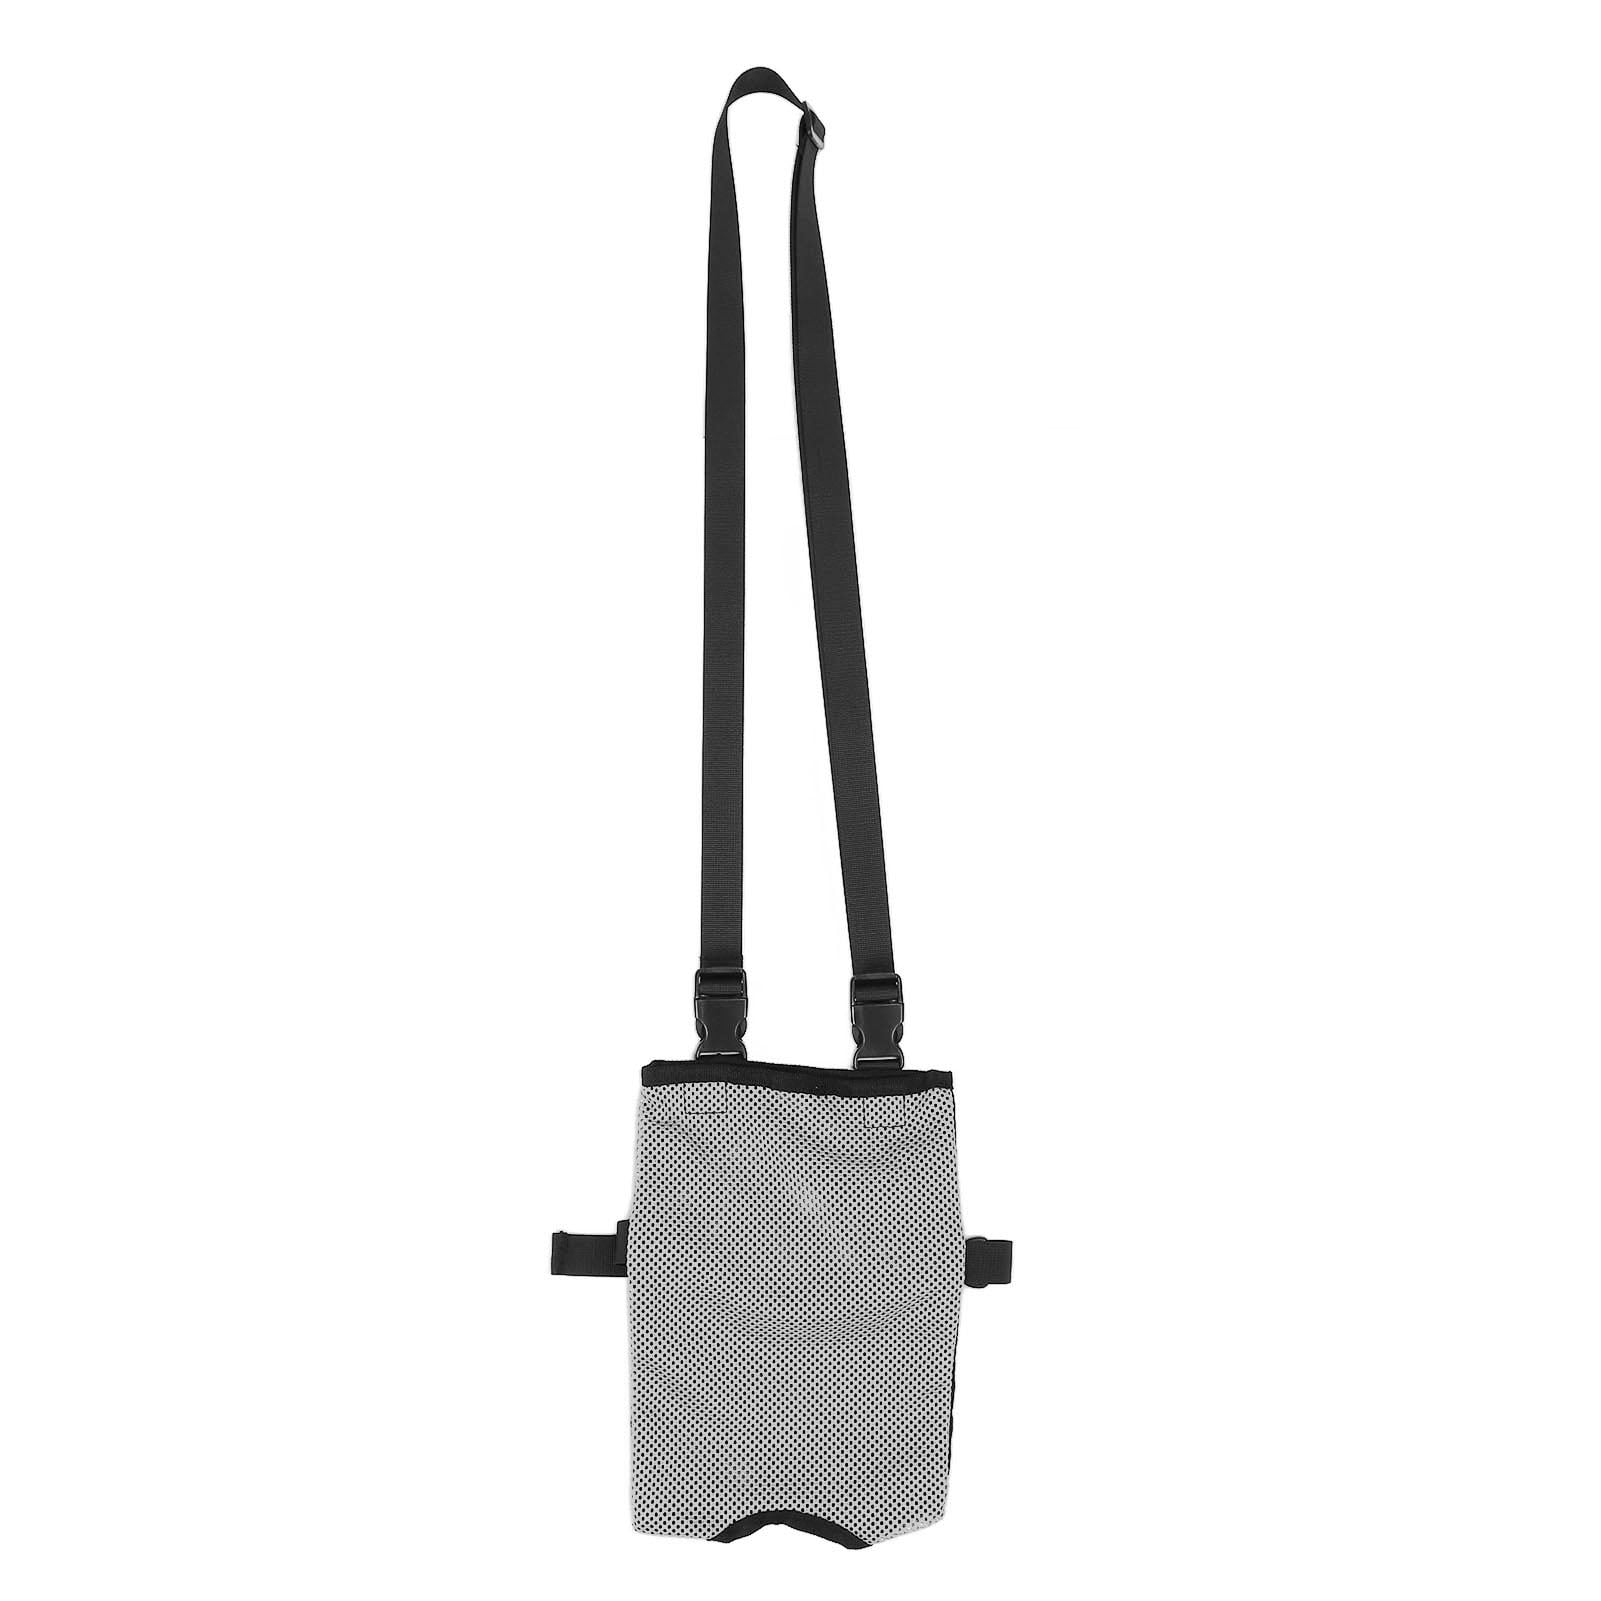 Urine Drain Bag Holder, Catheter Shoulder Bag Cover Strap Convenient ...